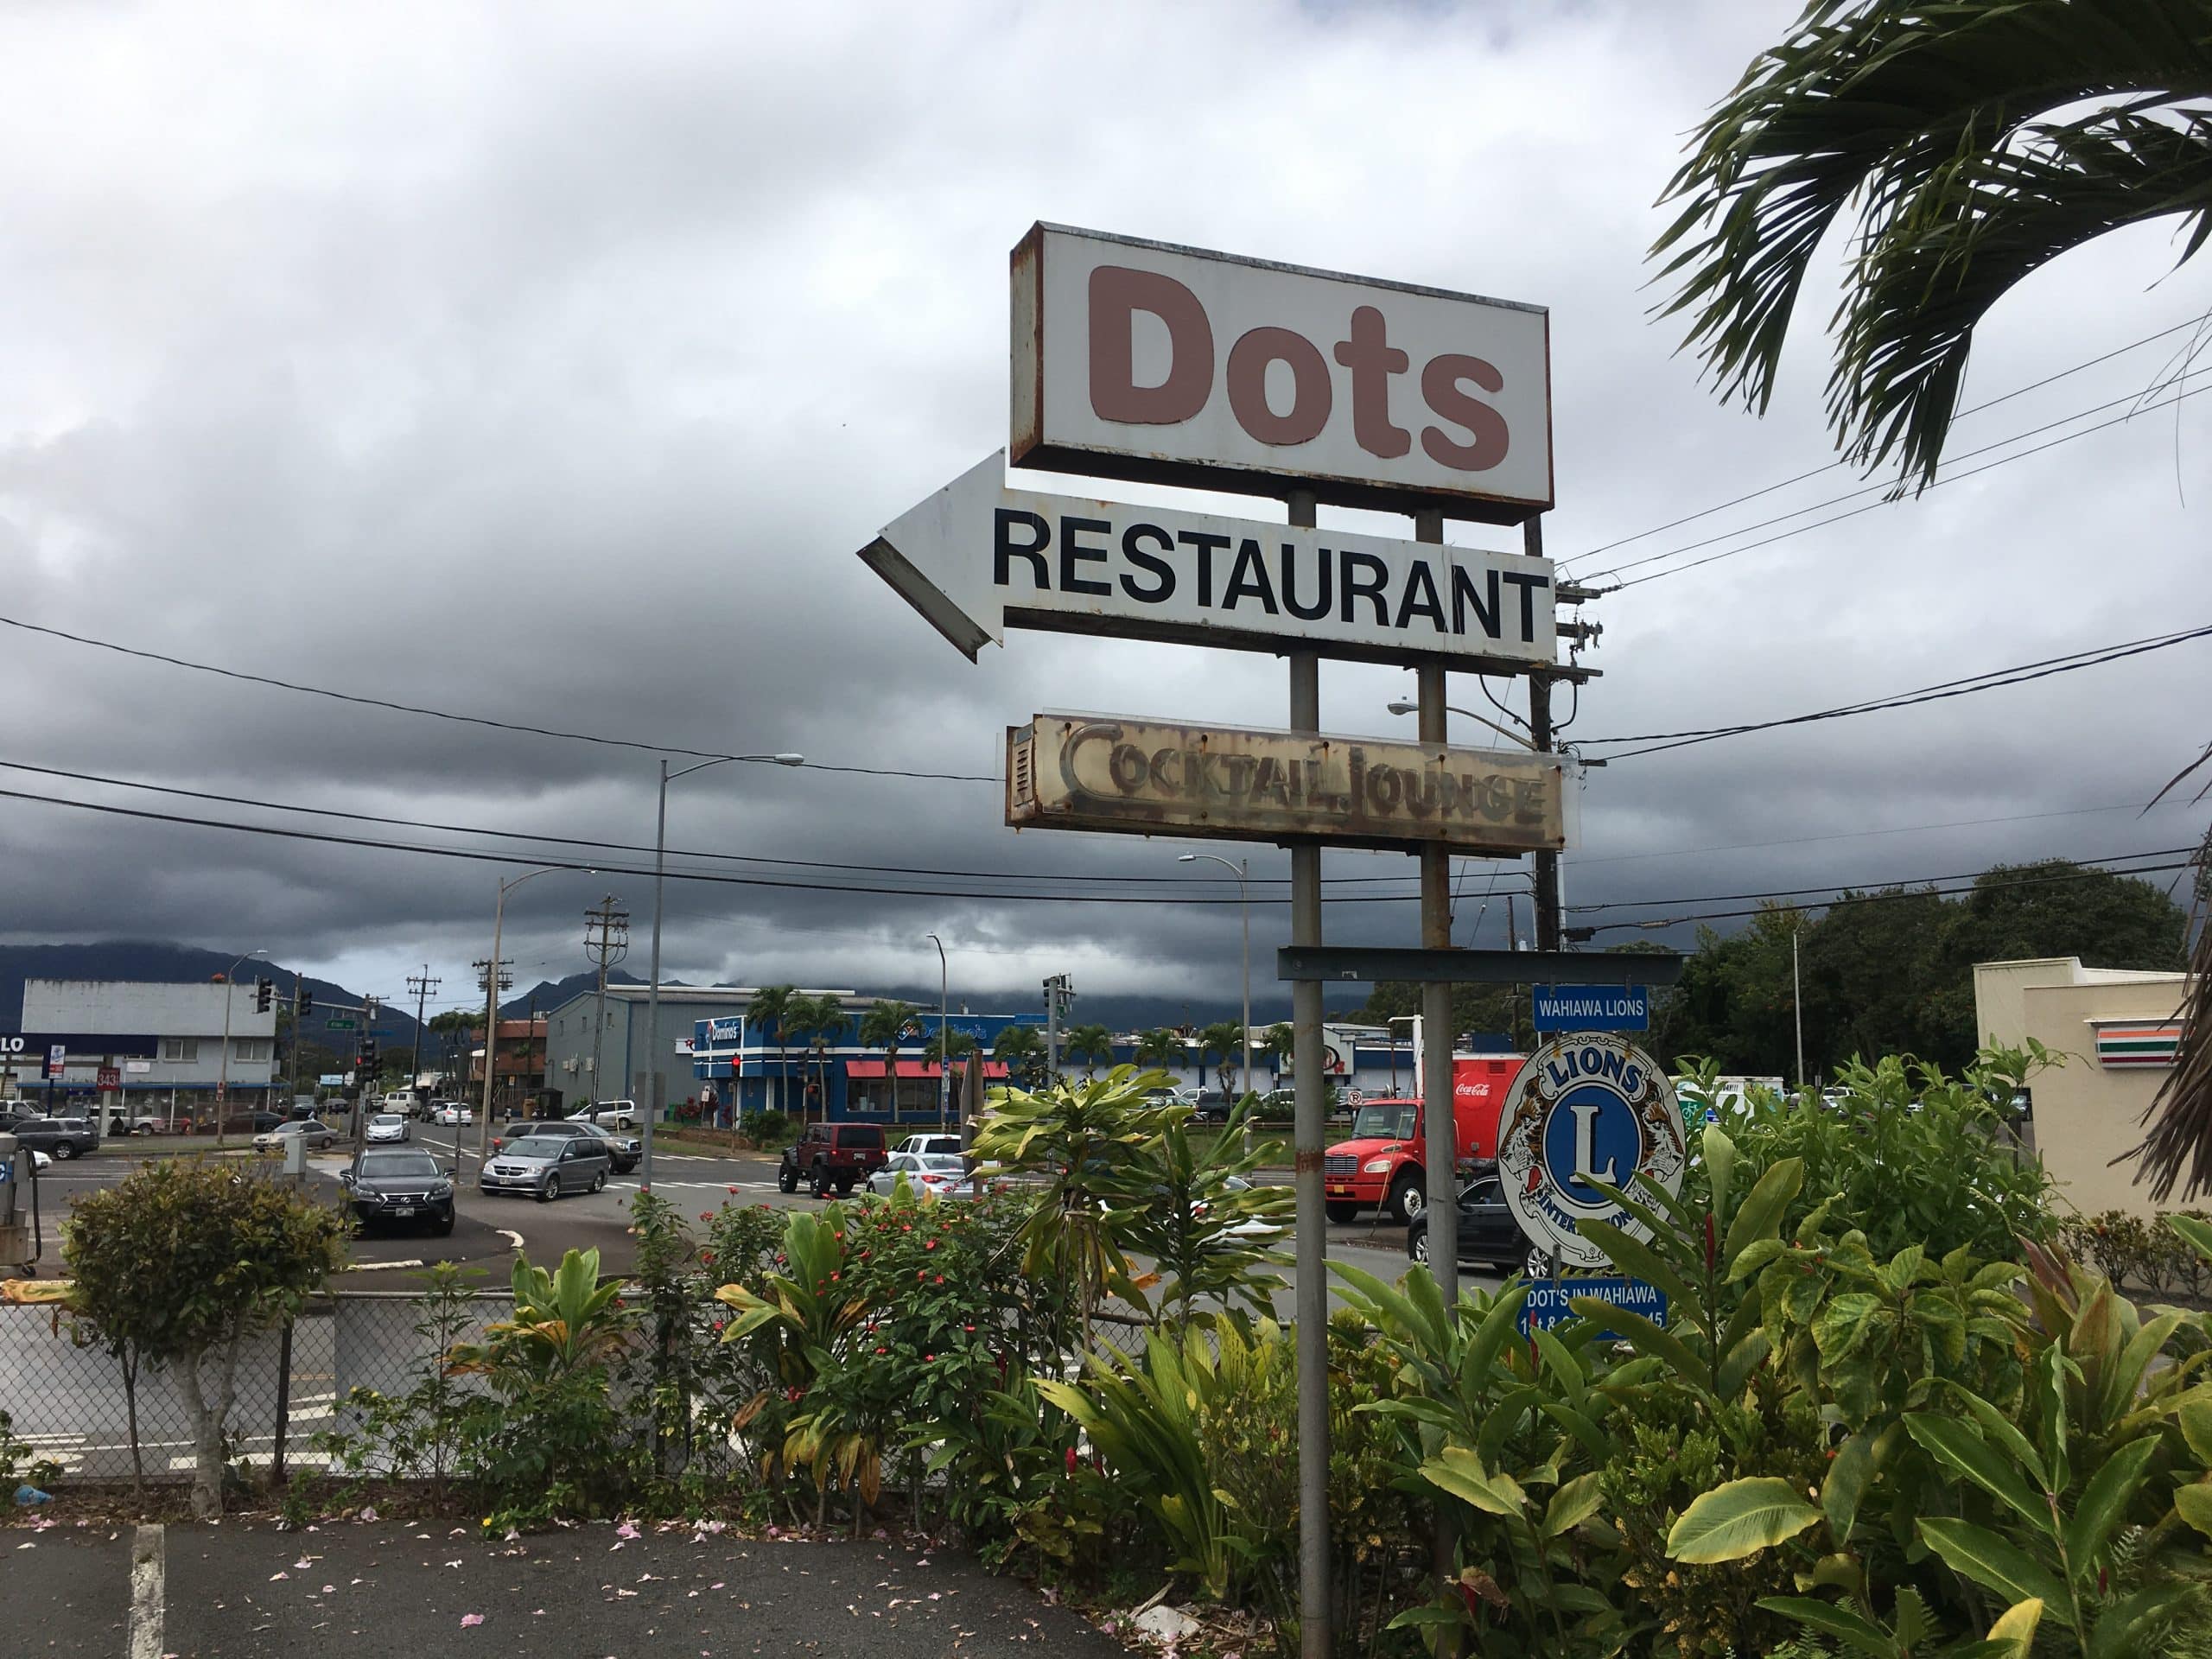 Dot's Restaurant - Hawaii Customer Success Roadshow